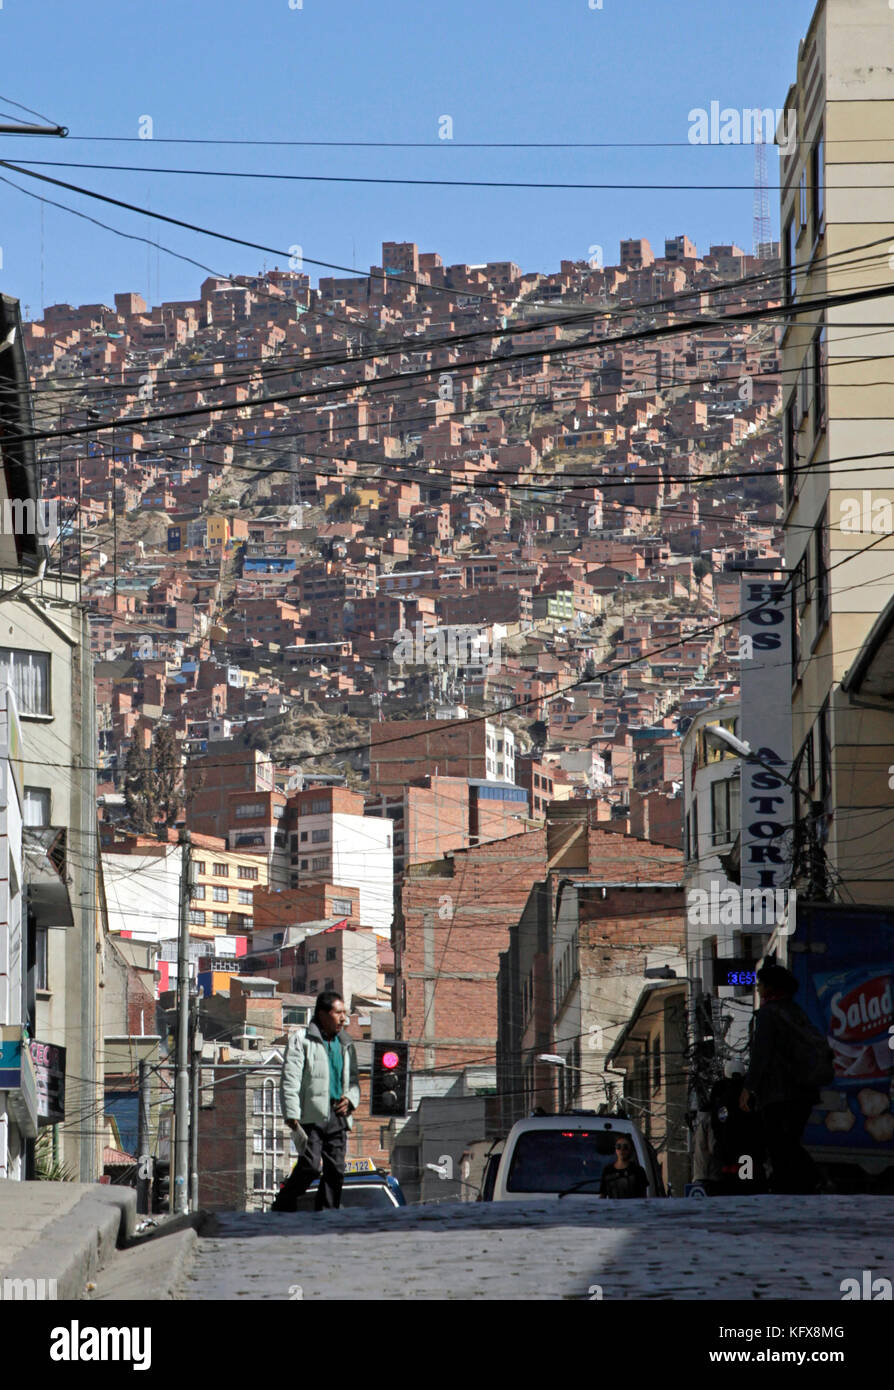 2 Giugno 2016 - La Paz - Bolivia: scene di strada e gli edifici nella città di La Paz in Bolivia. Foto Stock